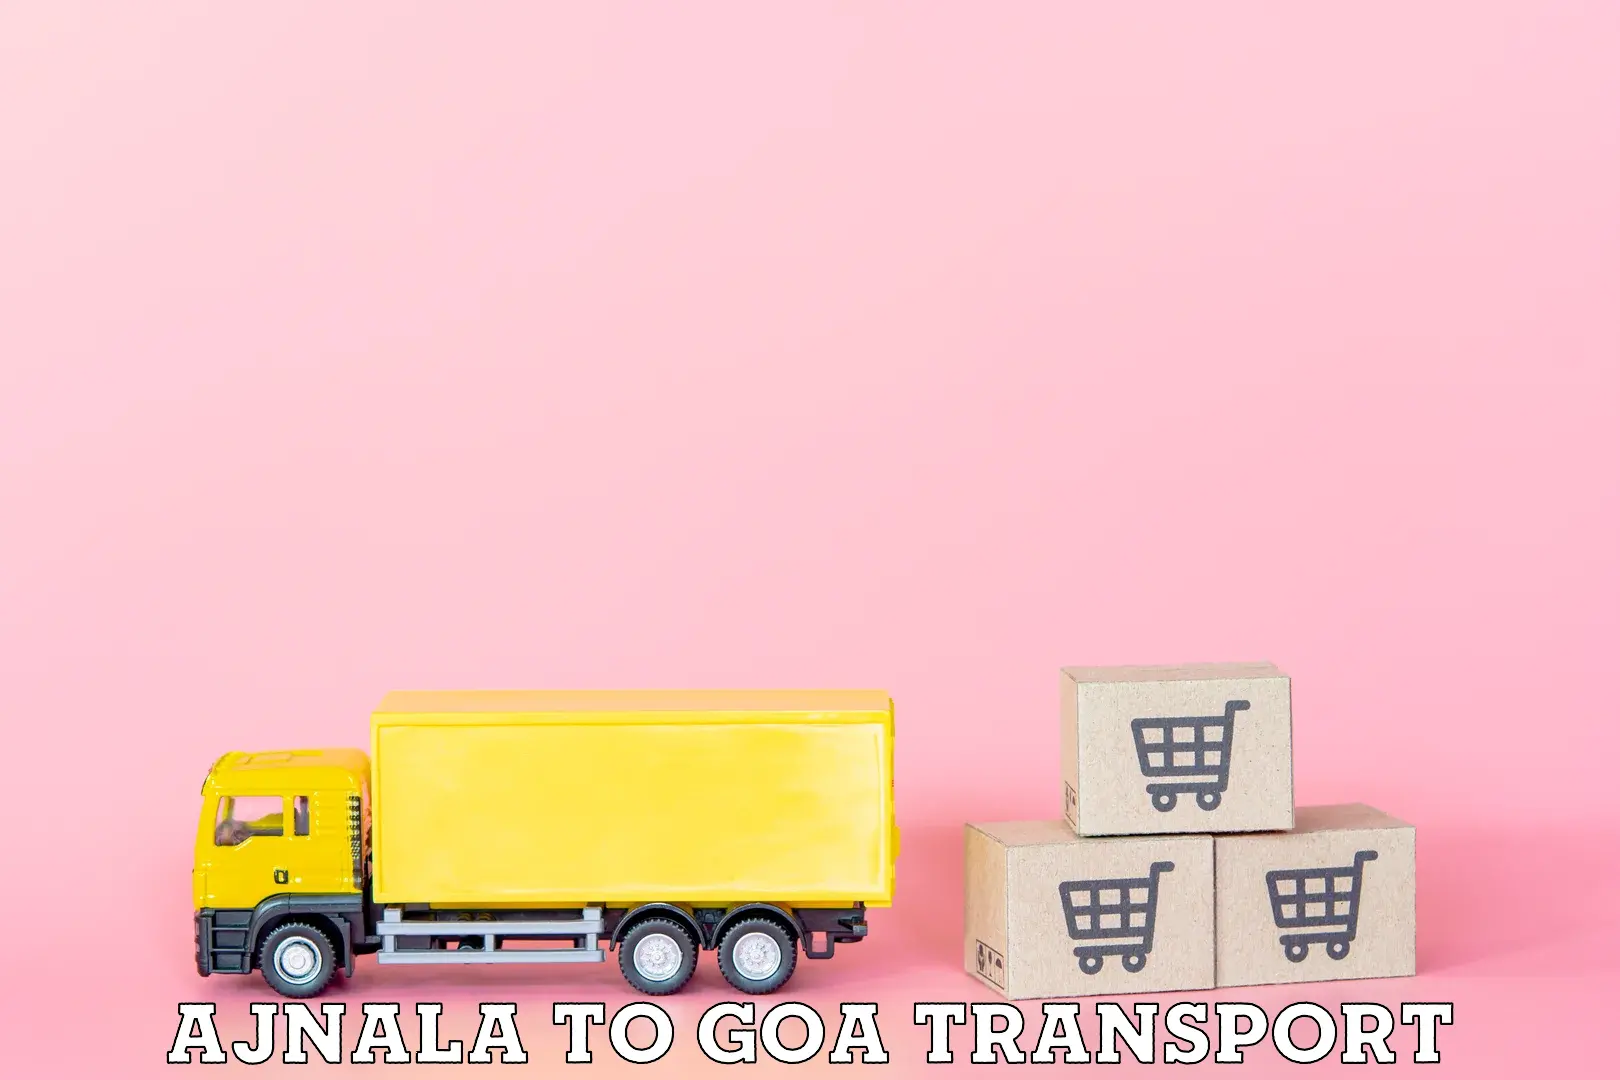 Nationwide transport services Ajnala to Vasco da Gama